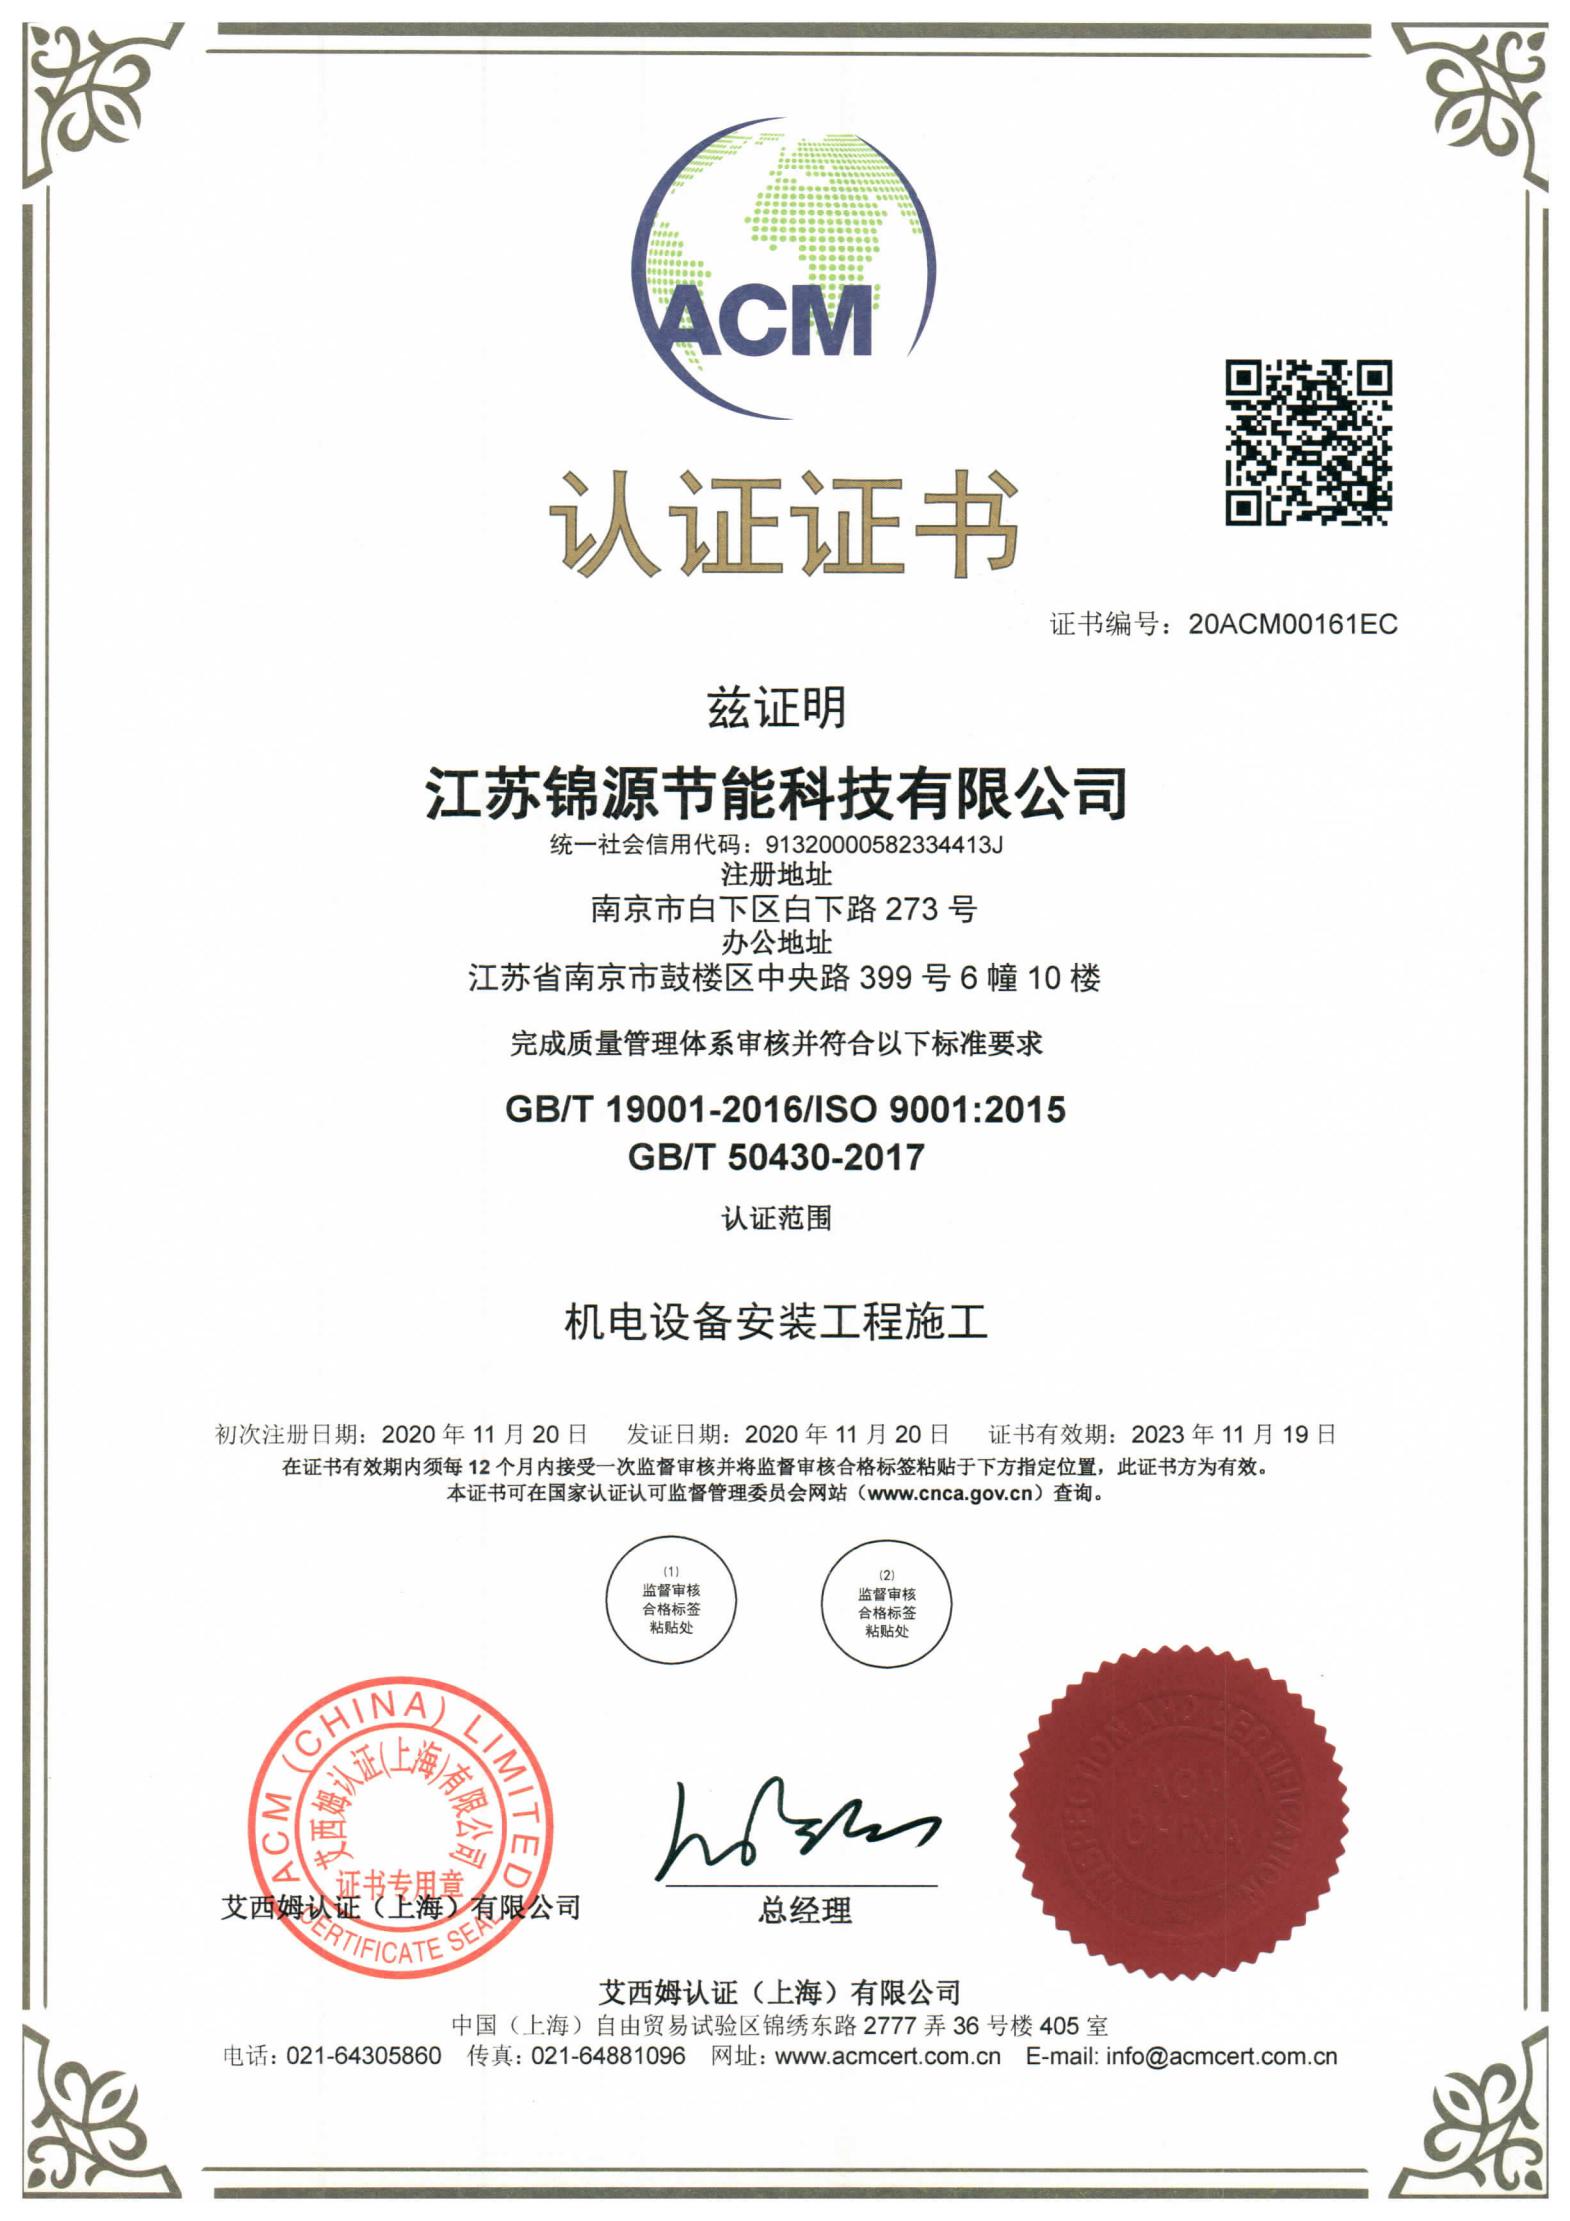 江苏锦源顺利取得ISO9001